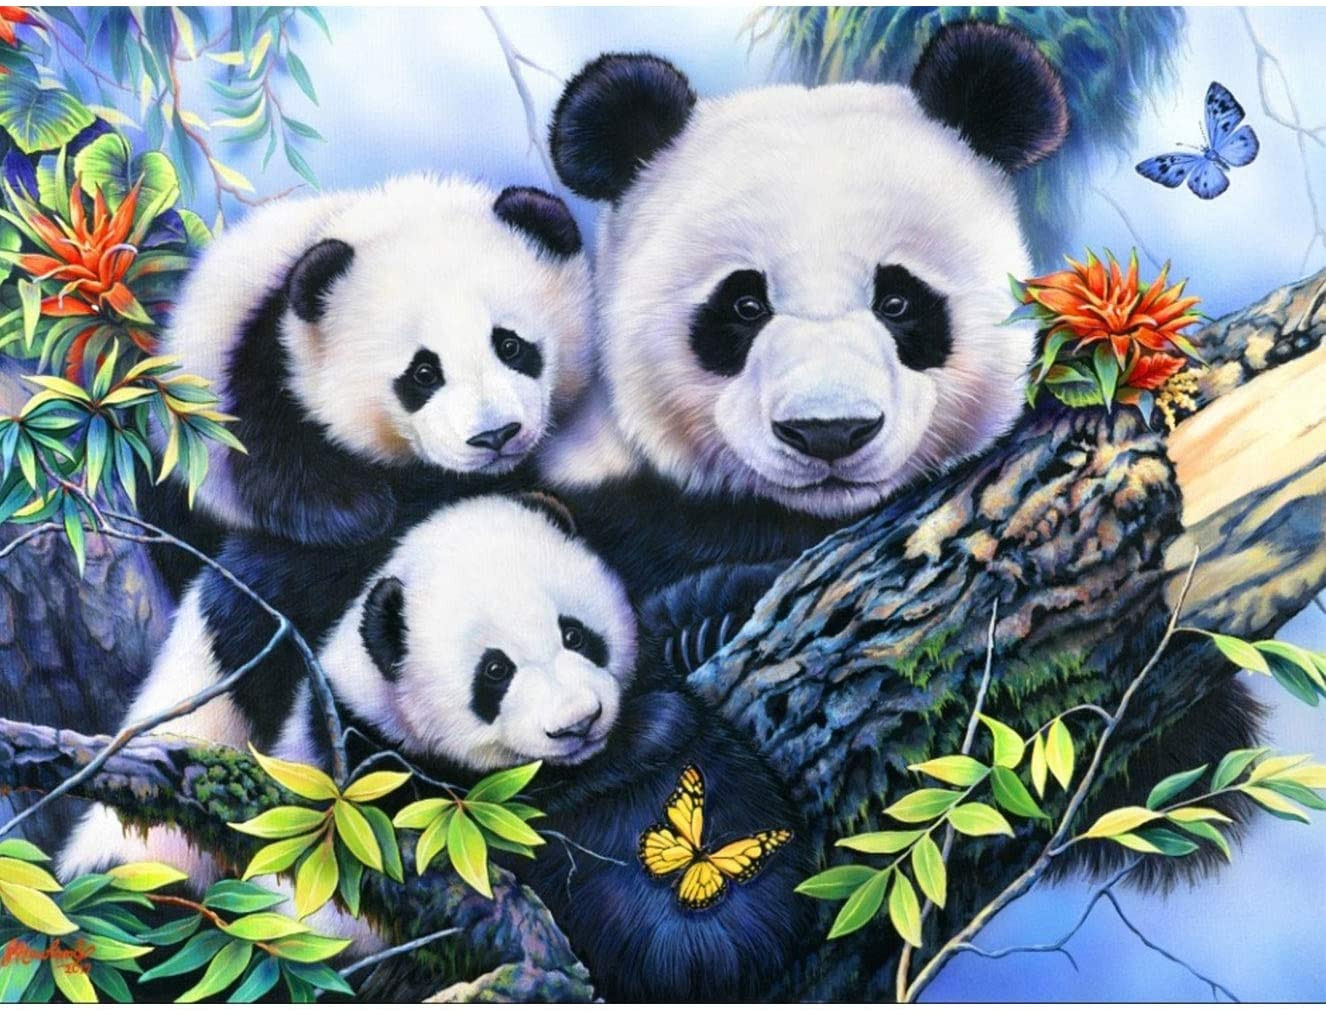 Three pandas | Full Round Diamond Painting Kits